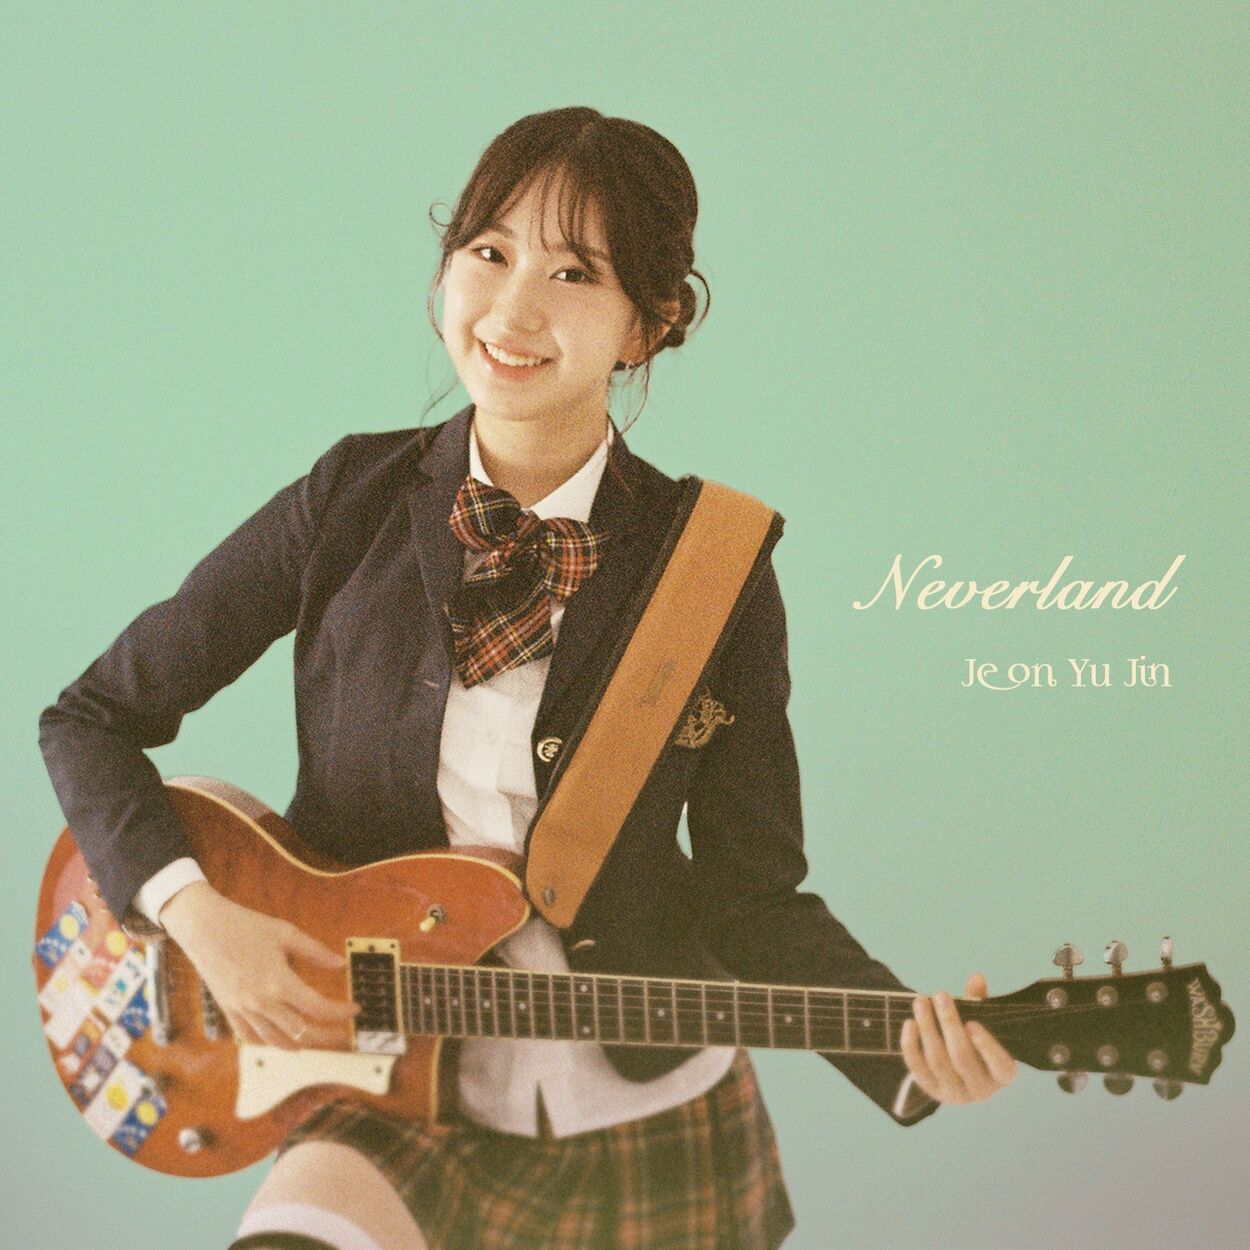 JEON YU JIN – Neverland – Single